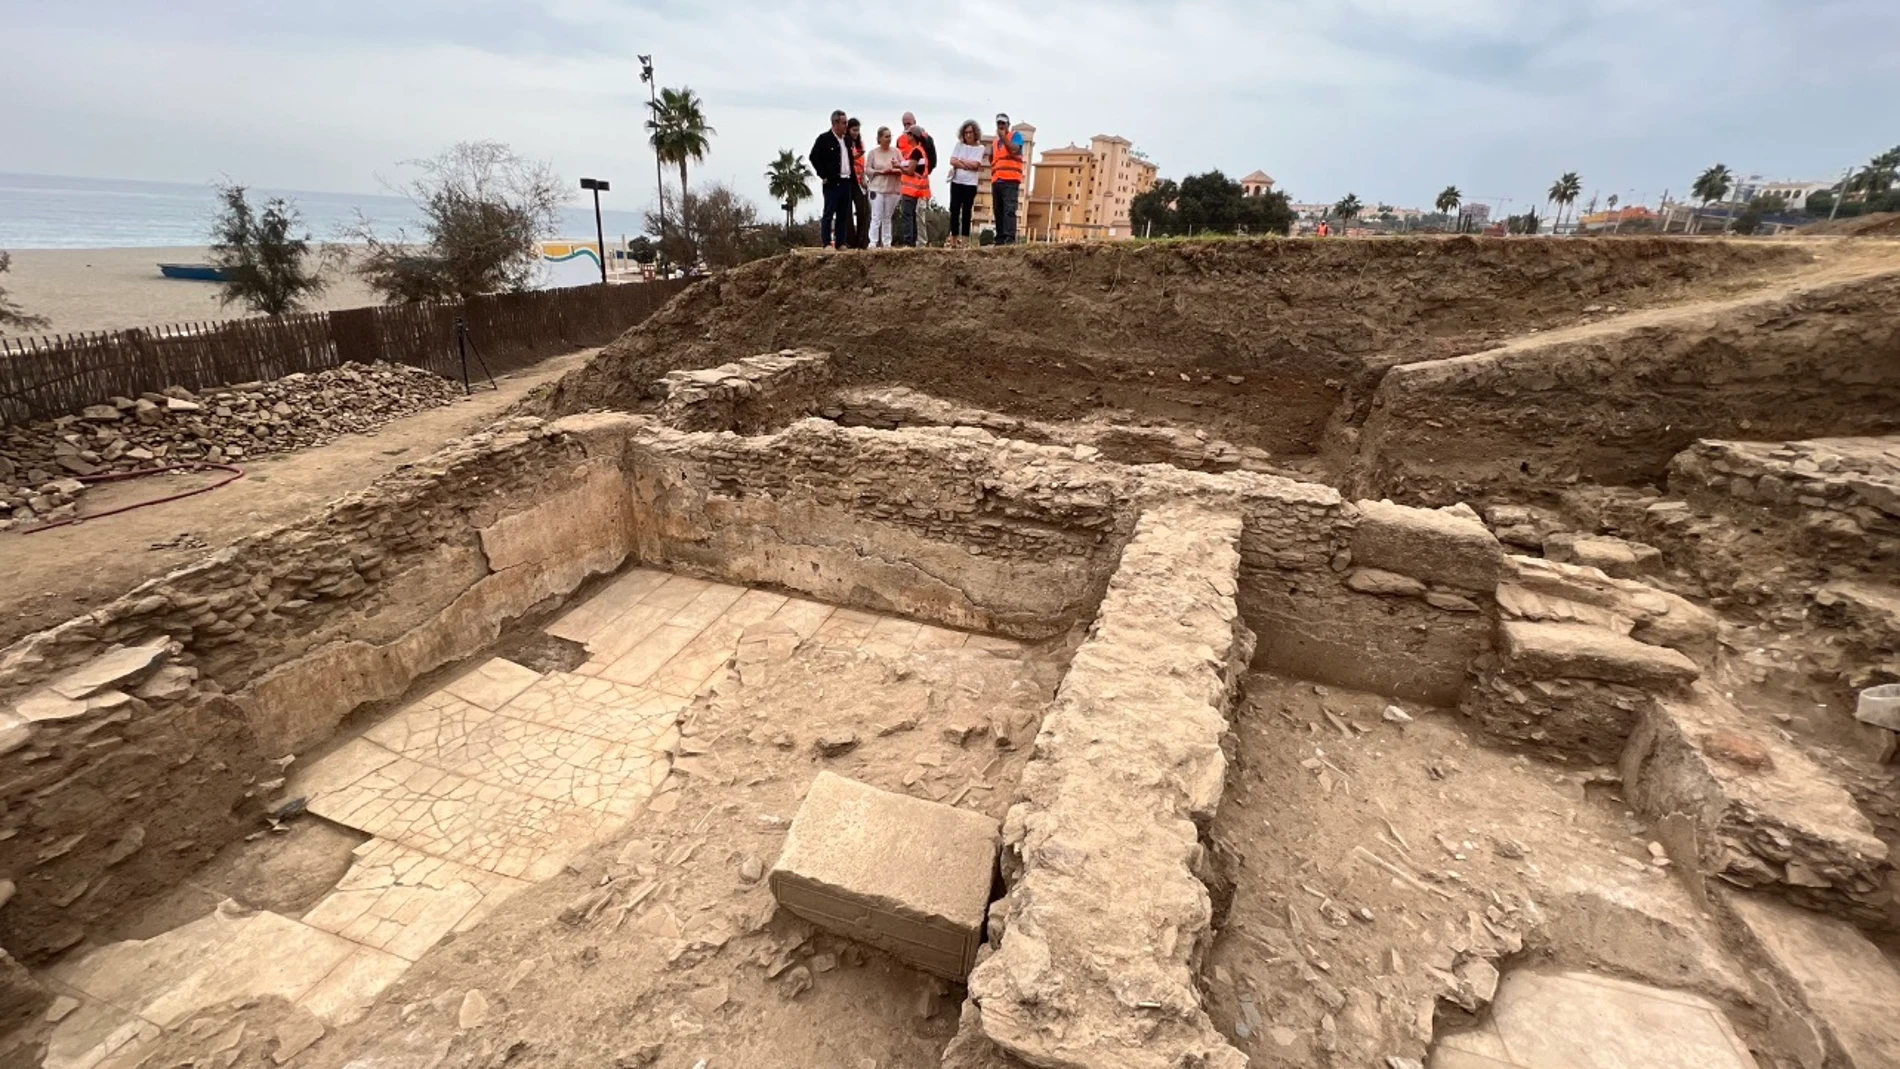 Vista de los restos arqueológicos hallados en Fuengirola y que están siendo investigados